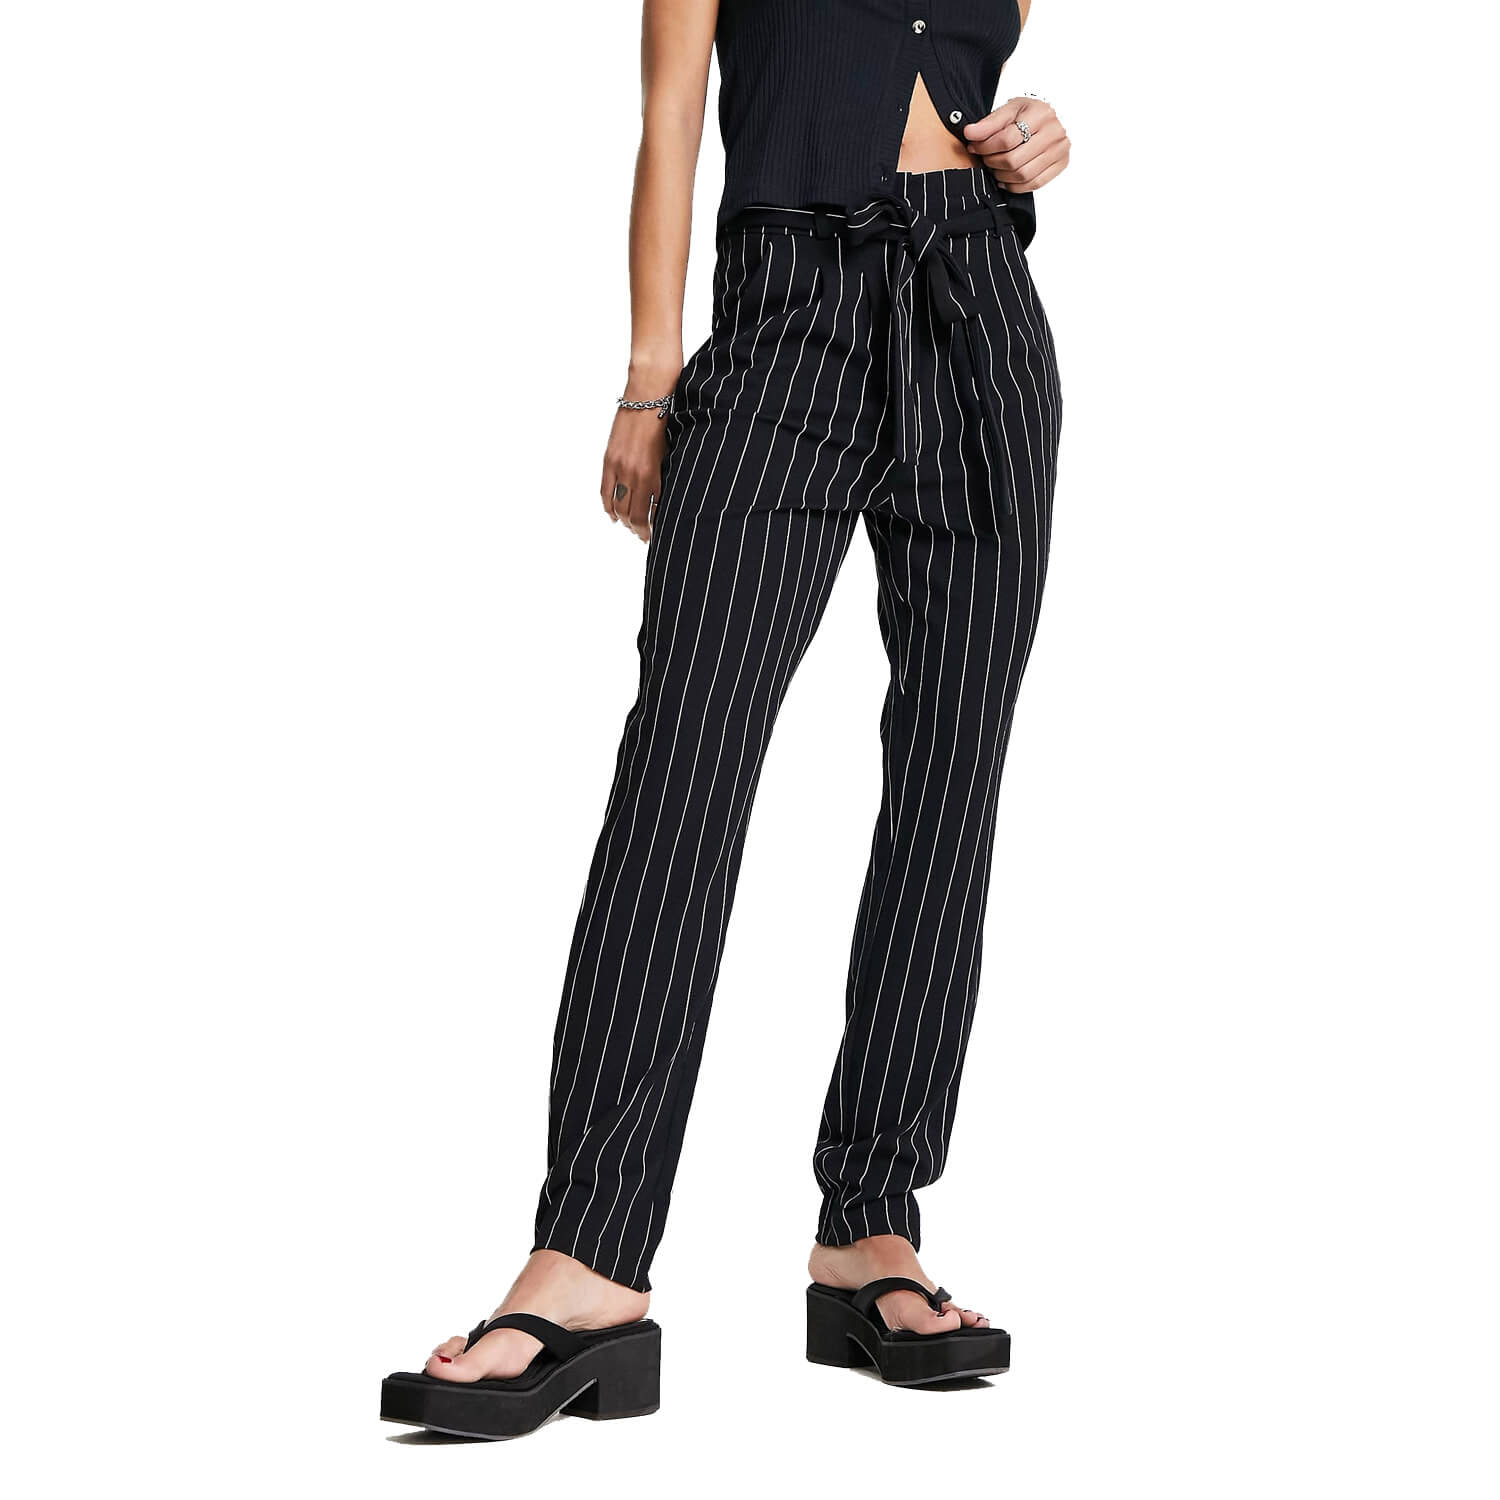 Брюки JDY Tapered With Paperbag Waist, черный черные зауженные брюки с завязками на талии vero moda